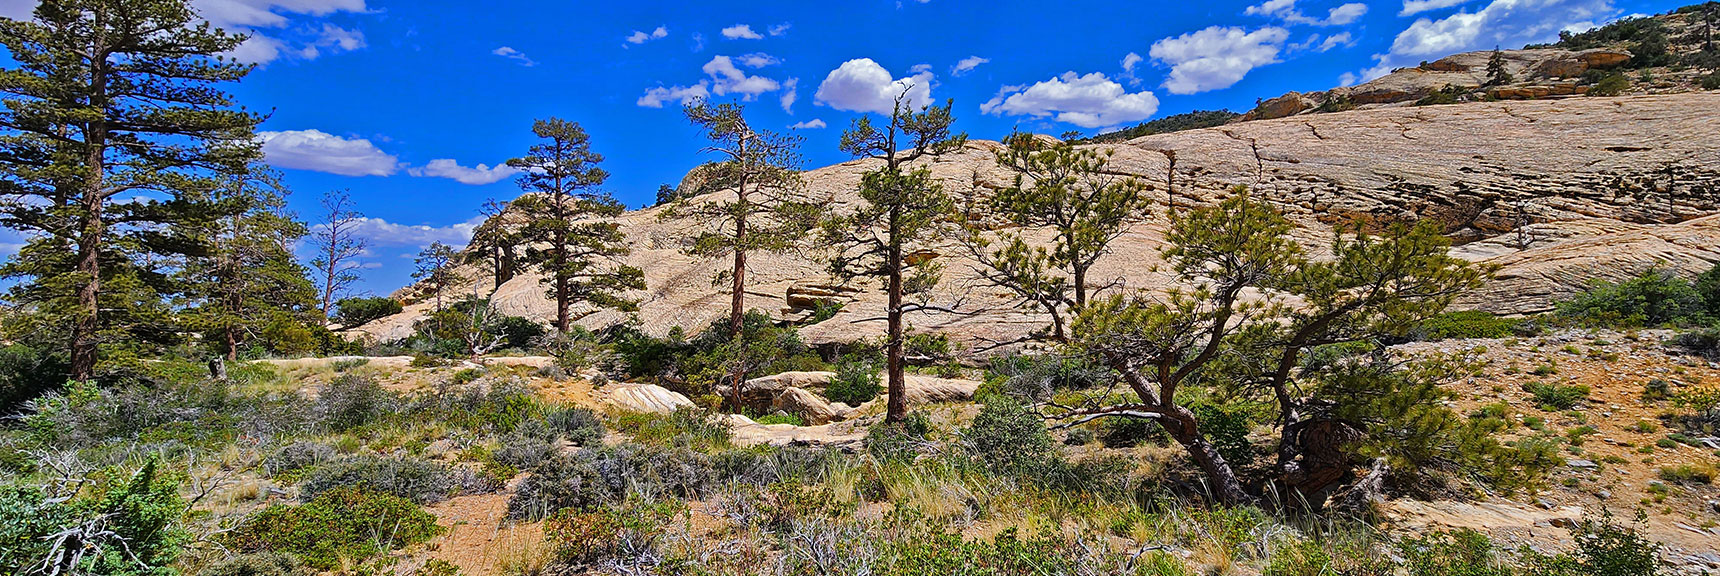 Wandering Through Little Zion Meadow. Monument & Hidden Peak Background | Little Zion | Rainbow Mountain Wilderness, Nevada